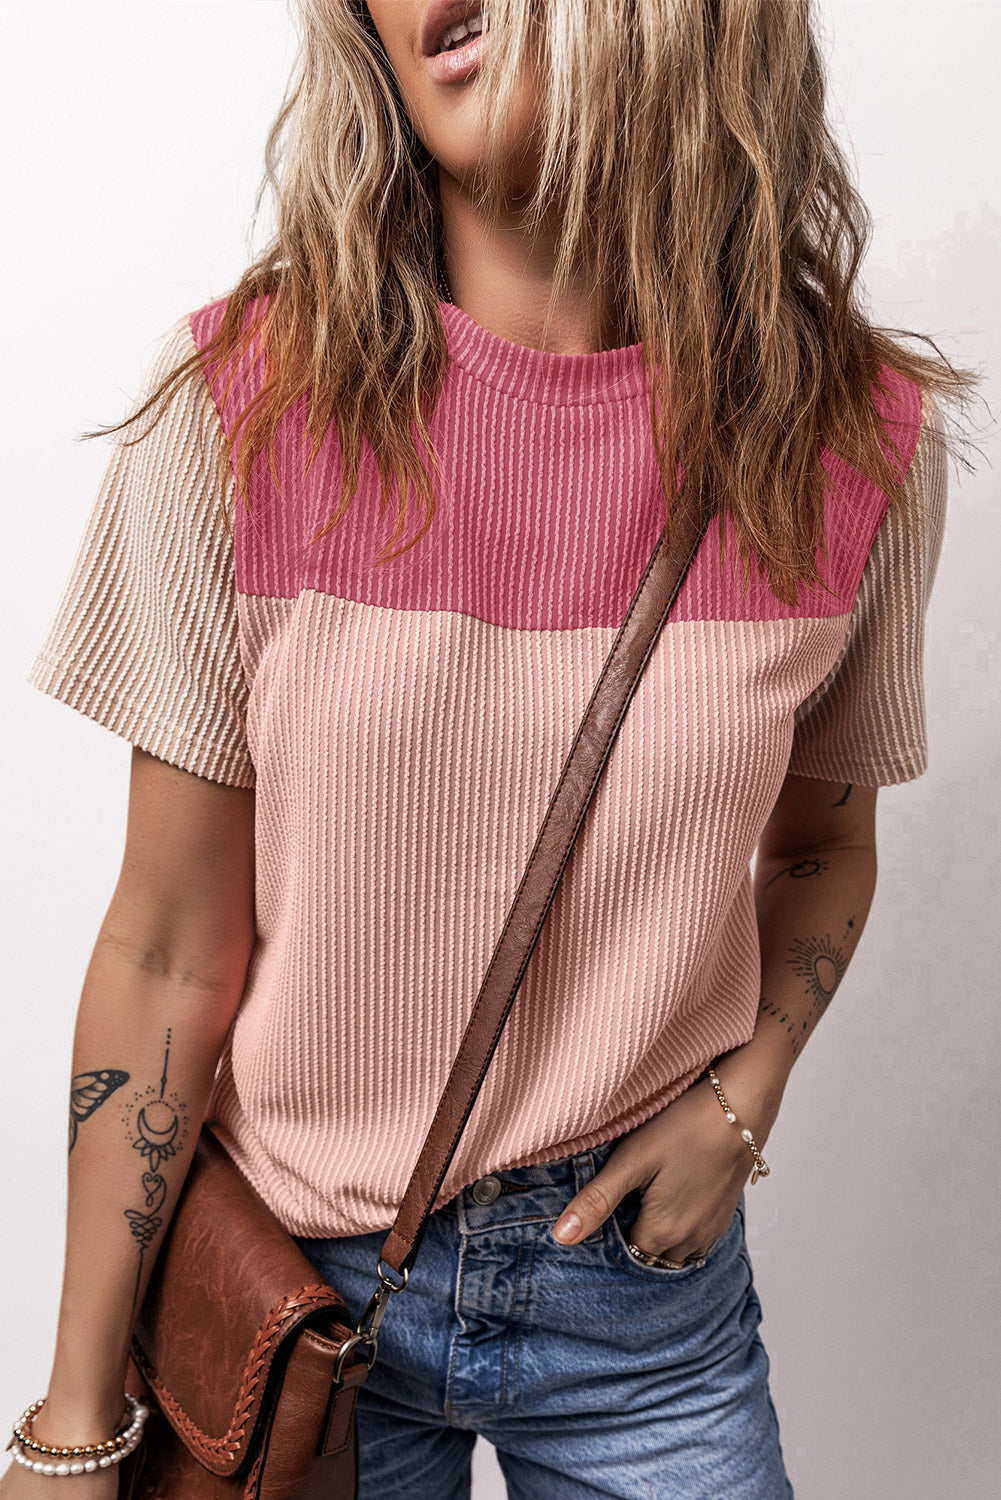 T-shirt color block texturé côtelé rose